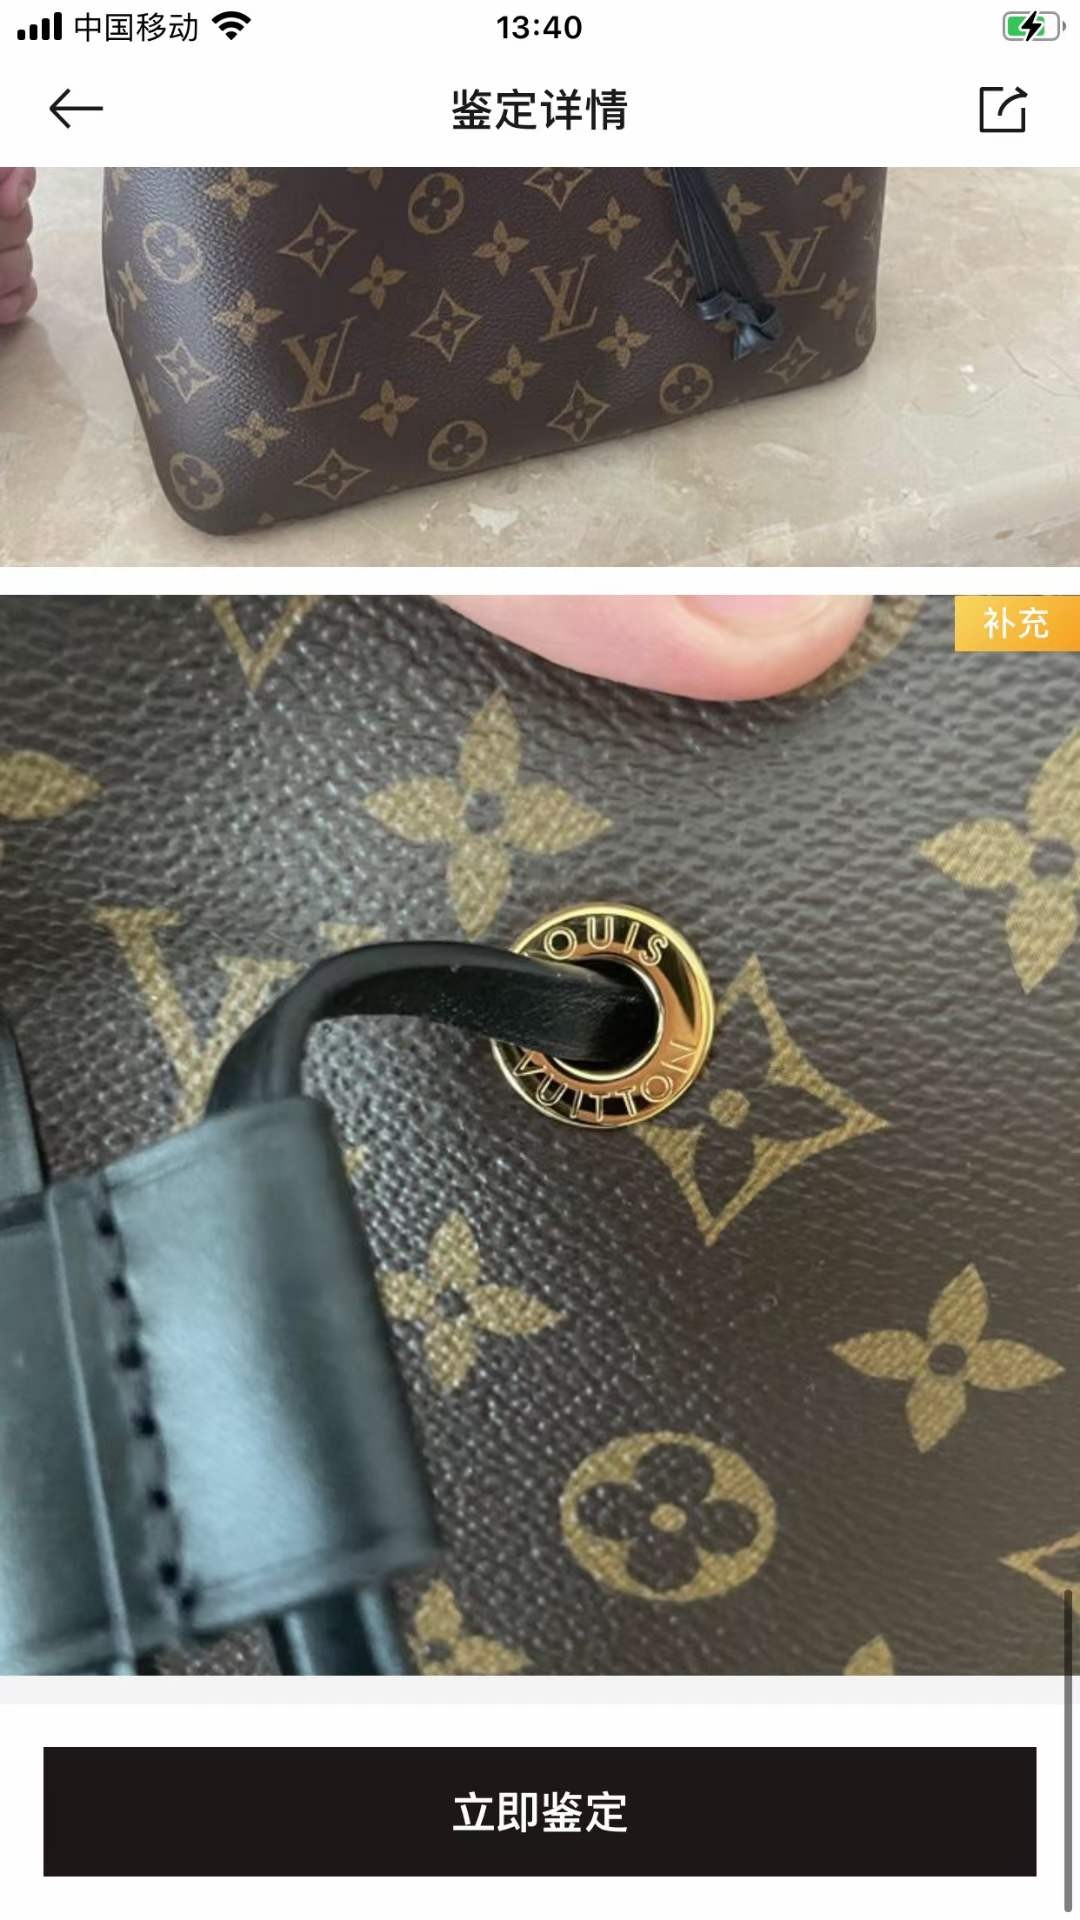 Louis Vuitton M44020 NÉONOÉ Top Replica Handbag Inspection Details (2022 Edition)-Best Quality Fake designer Bag Review, Replica designer bag ru